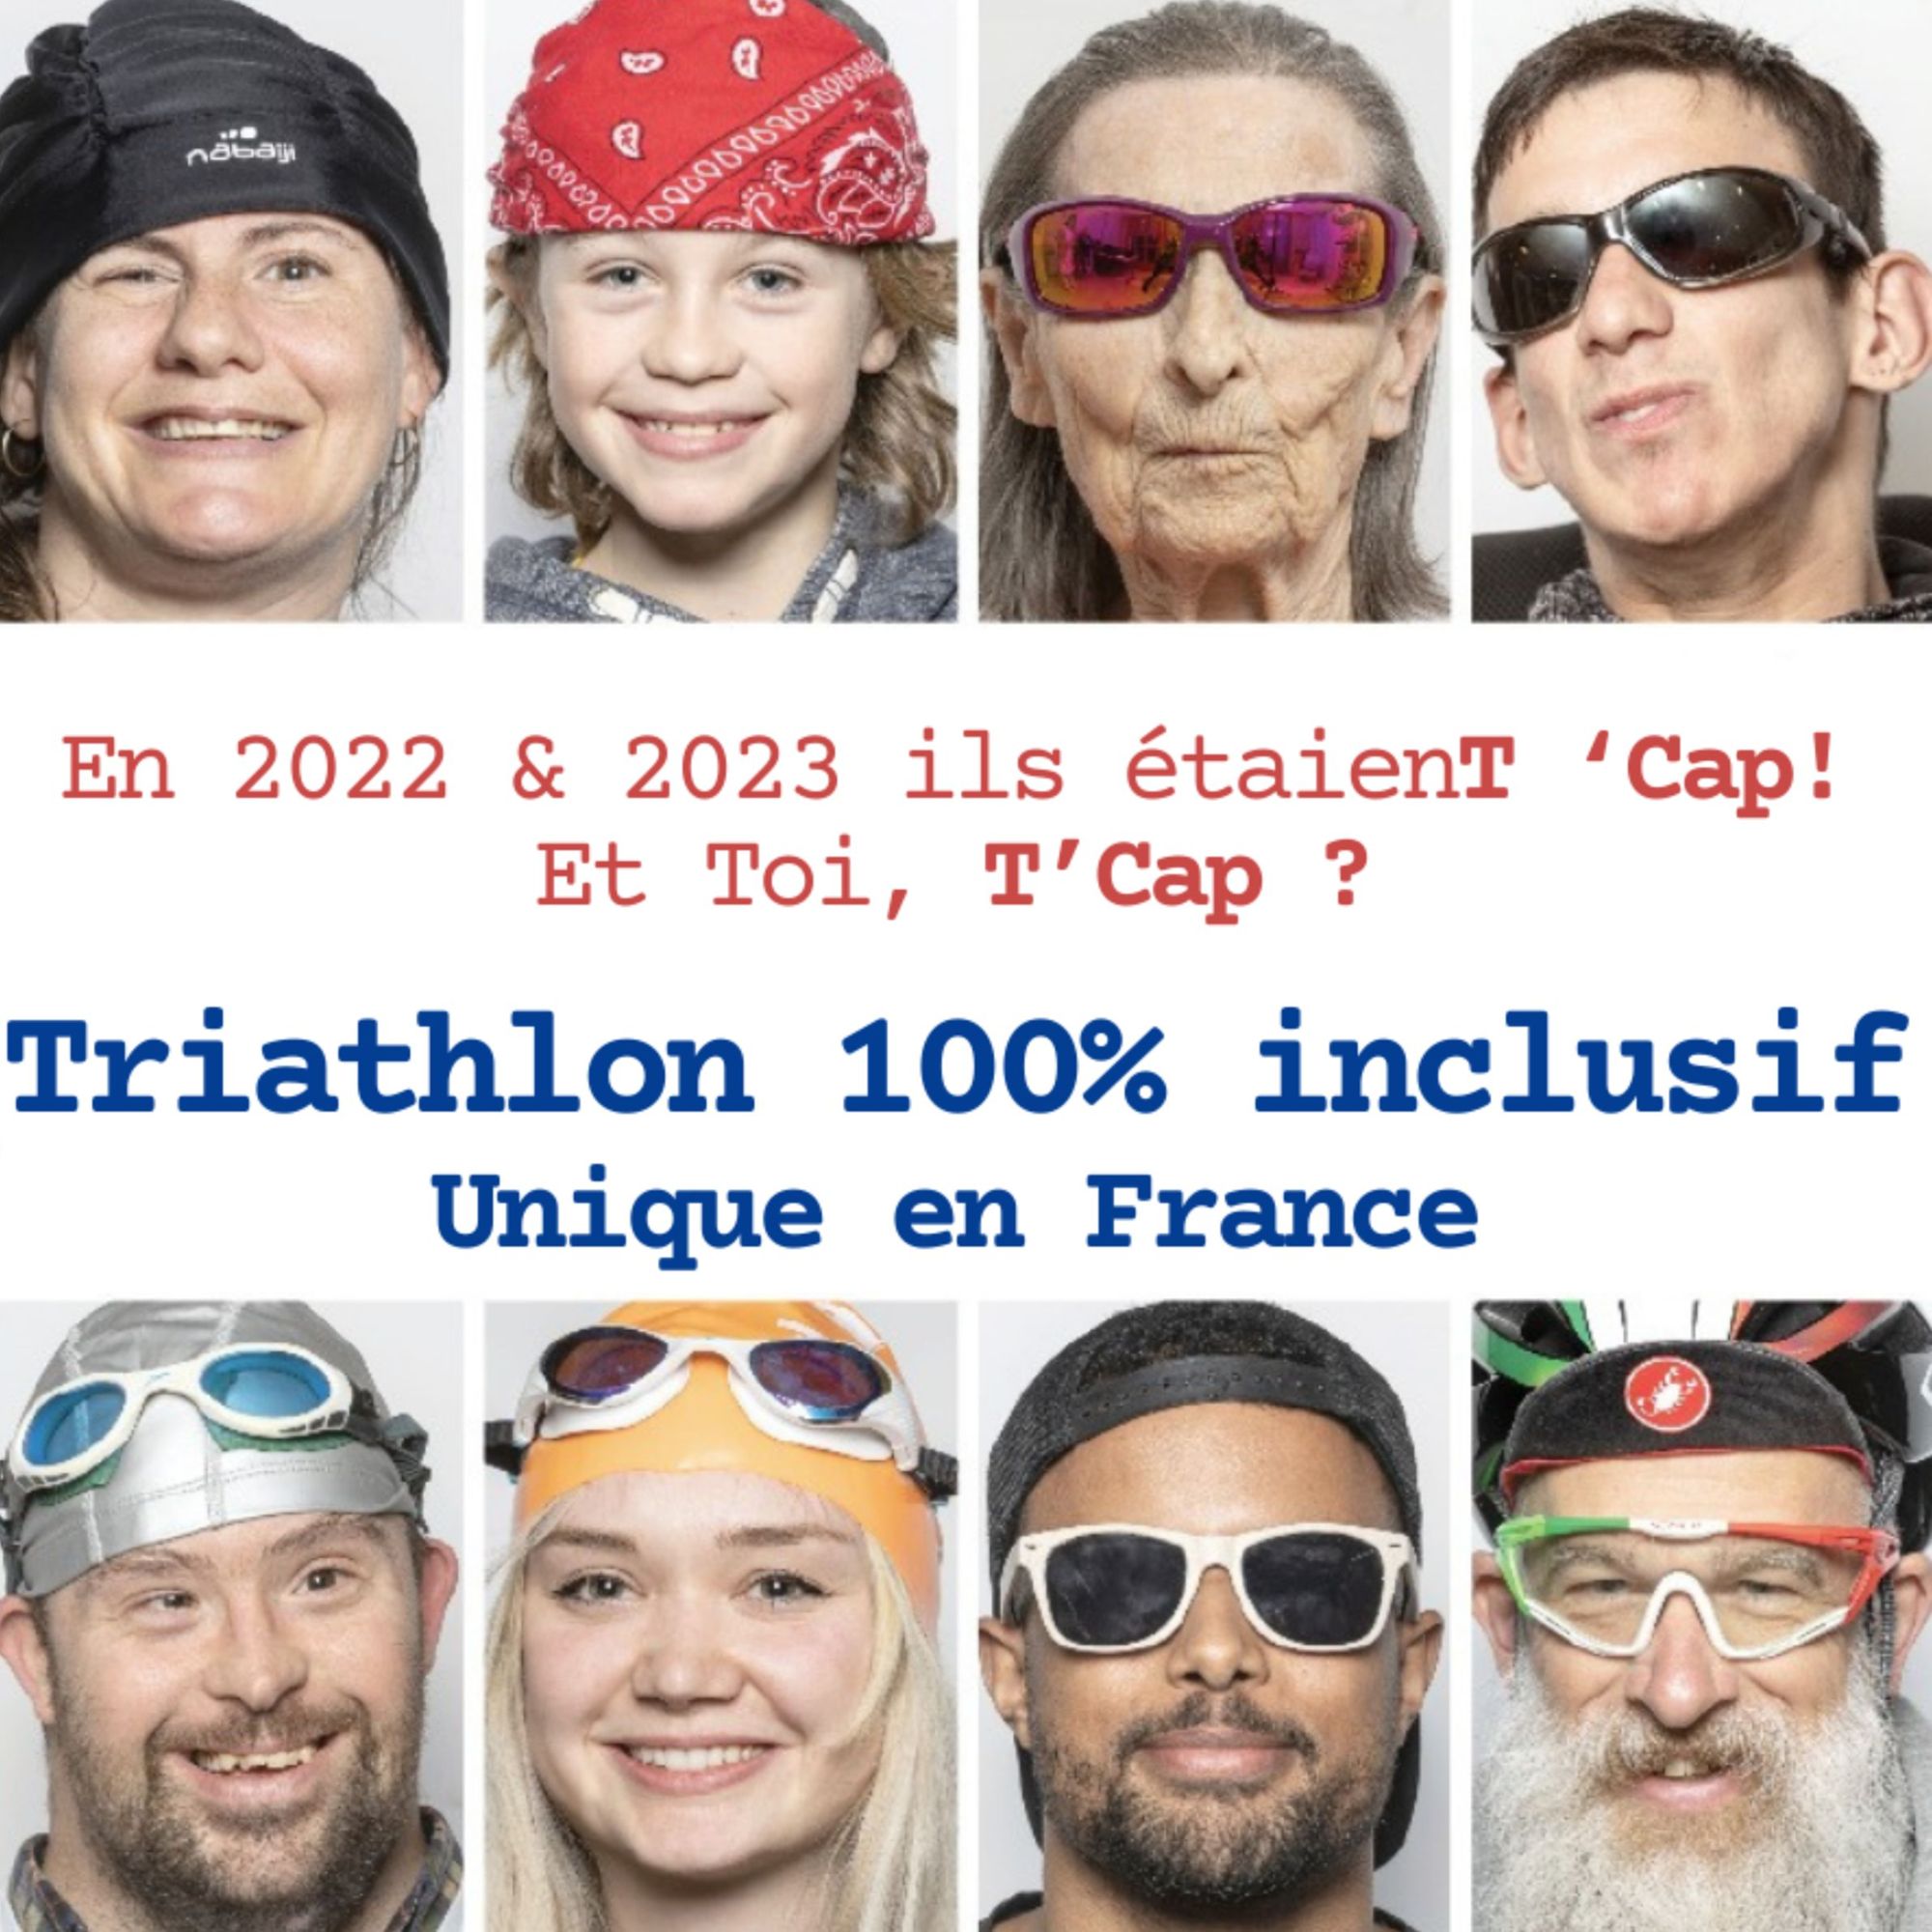 Triathlon 100% Inclusif!